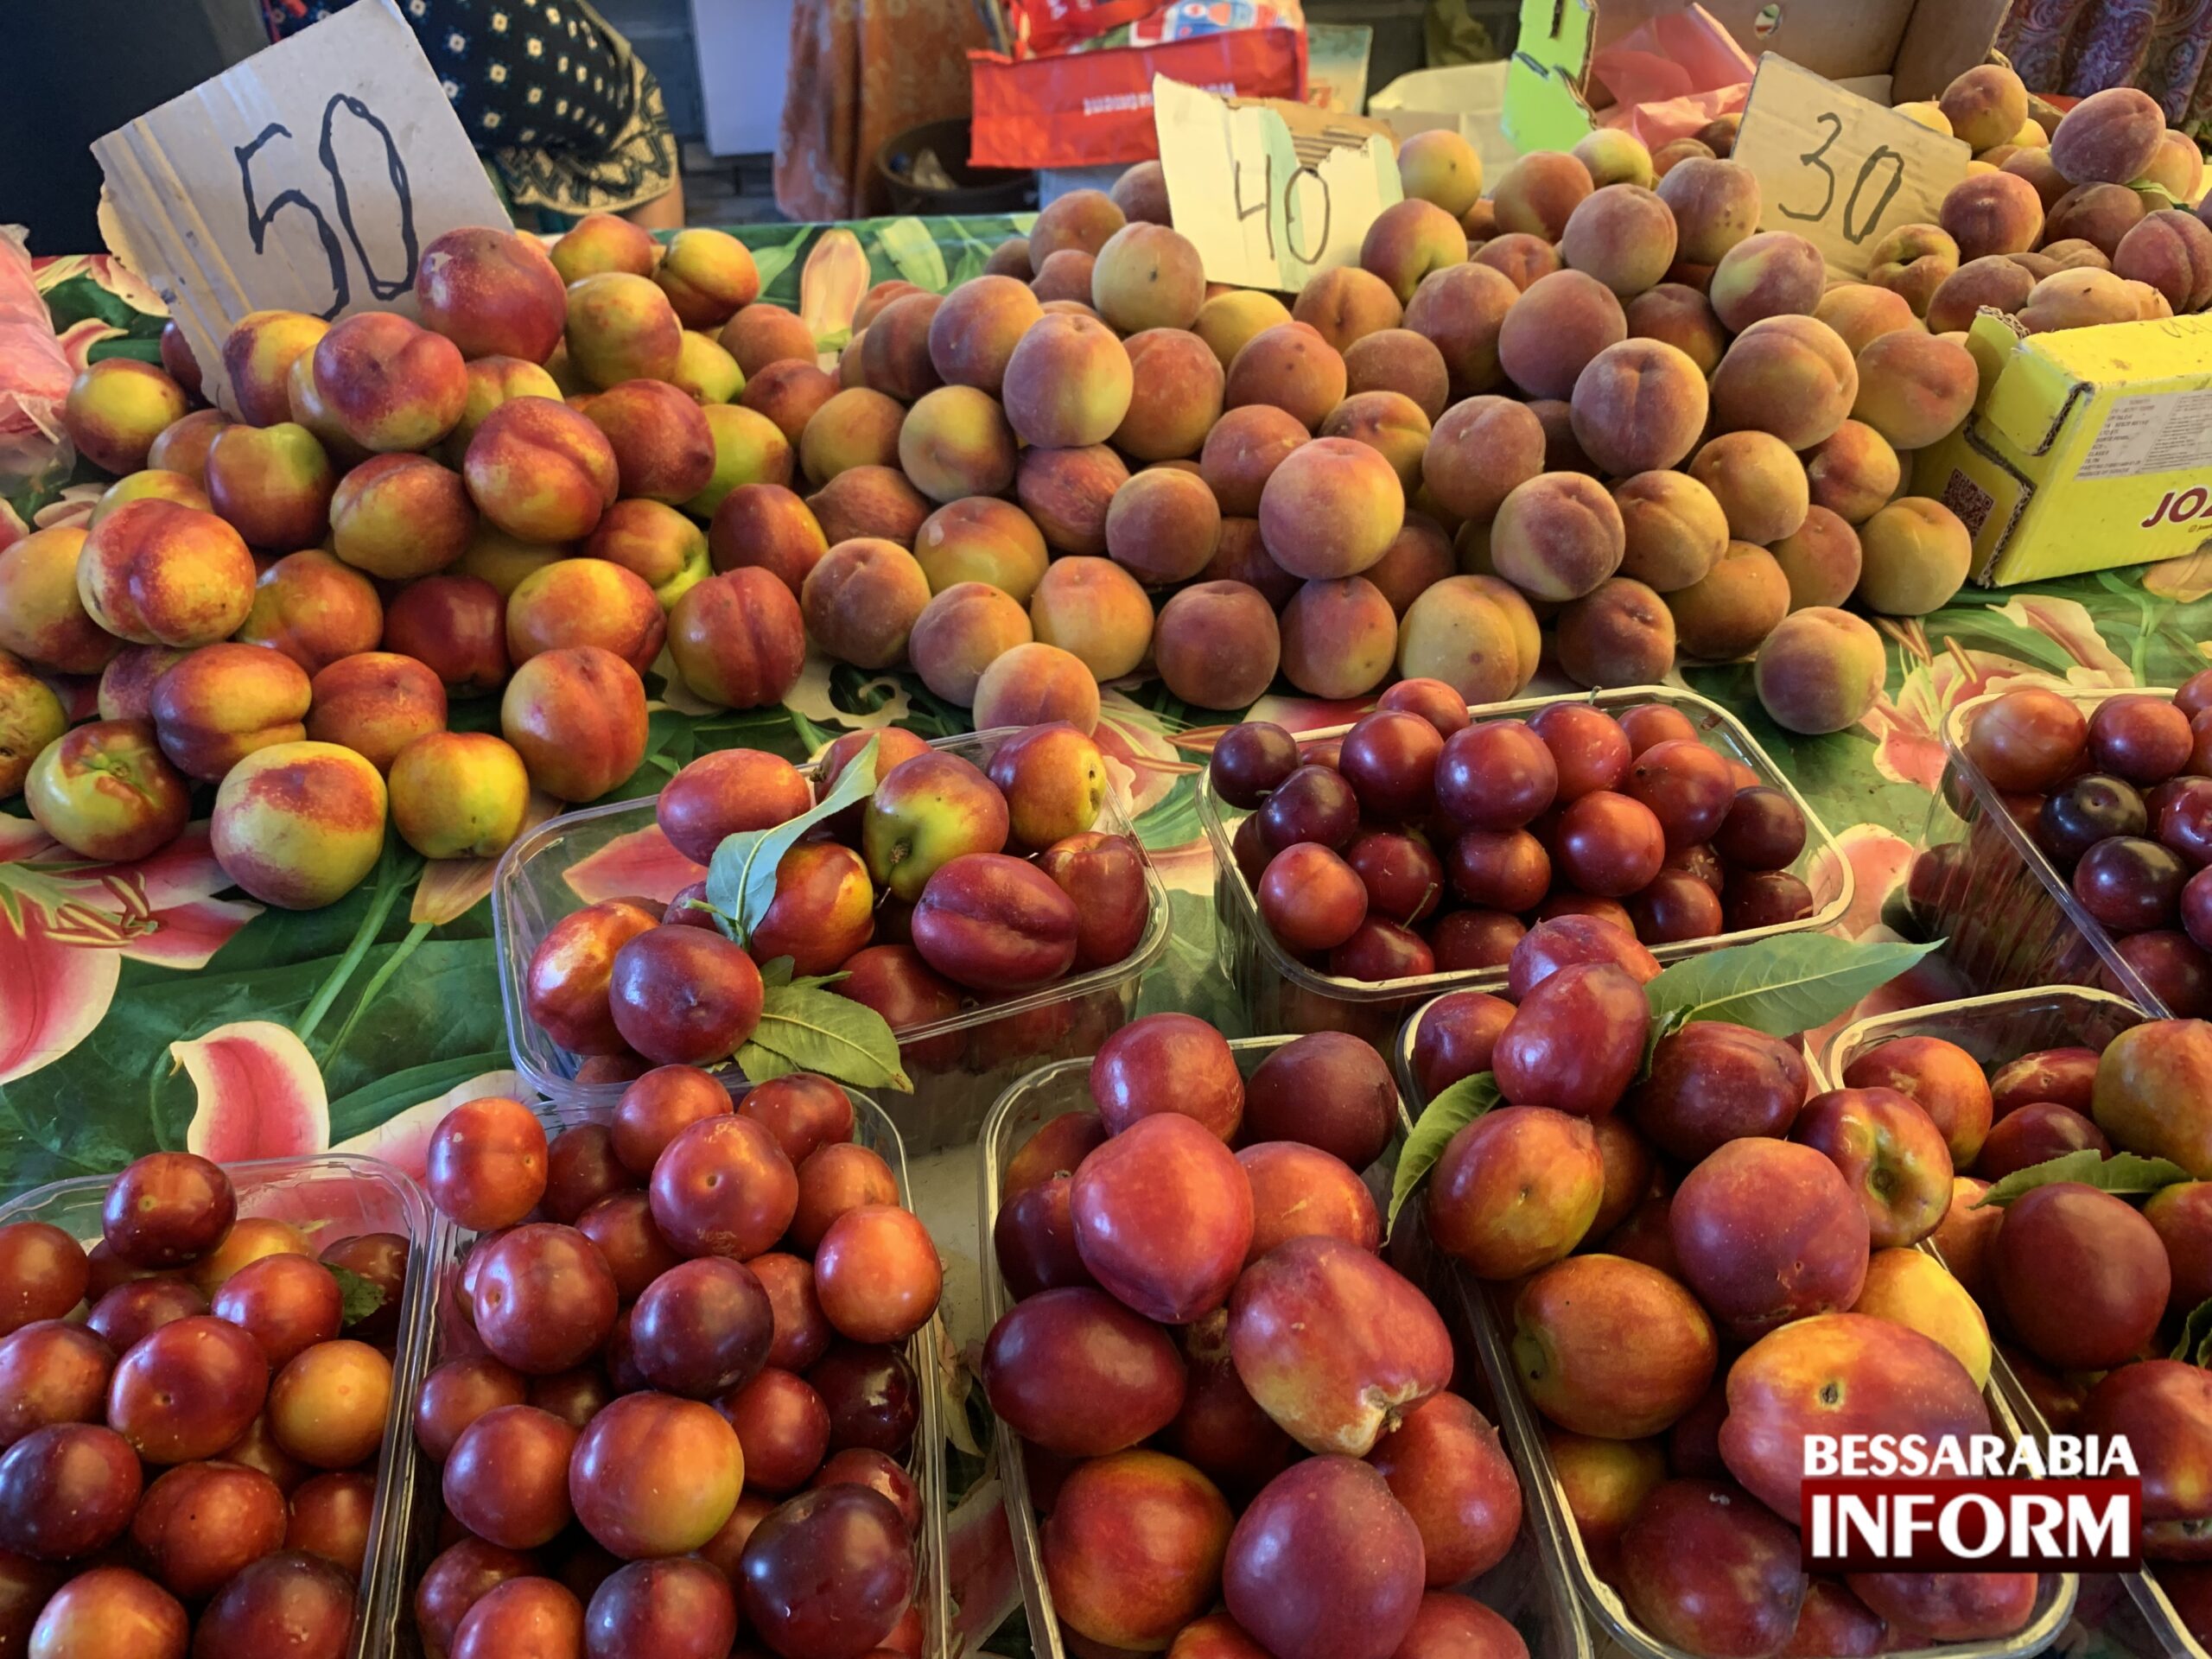 Последняя клубника за 100 гривен и сезонная черешня за 150: обзор заоблачных цен на Измаильском базаре